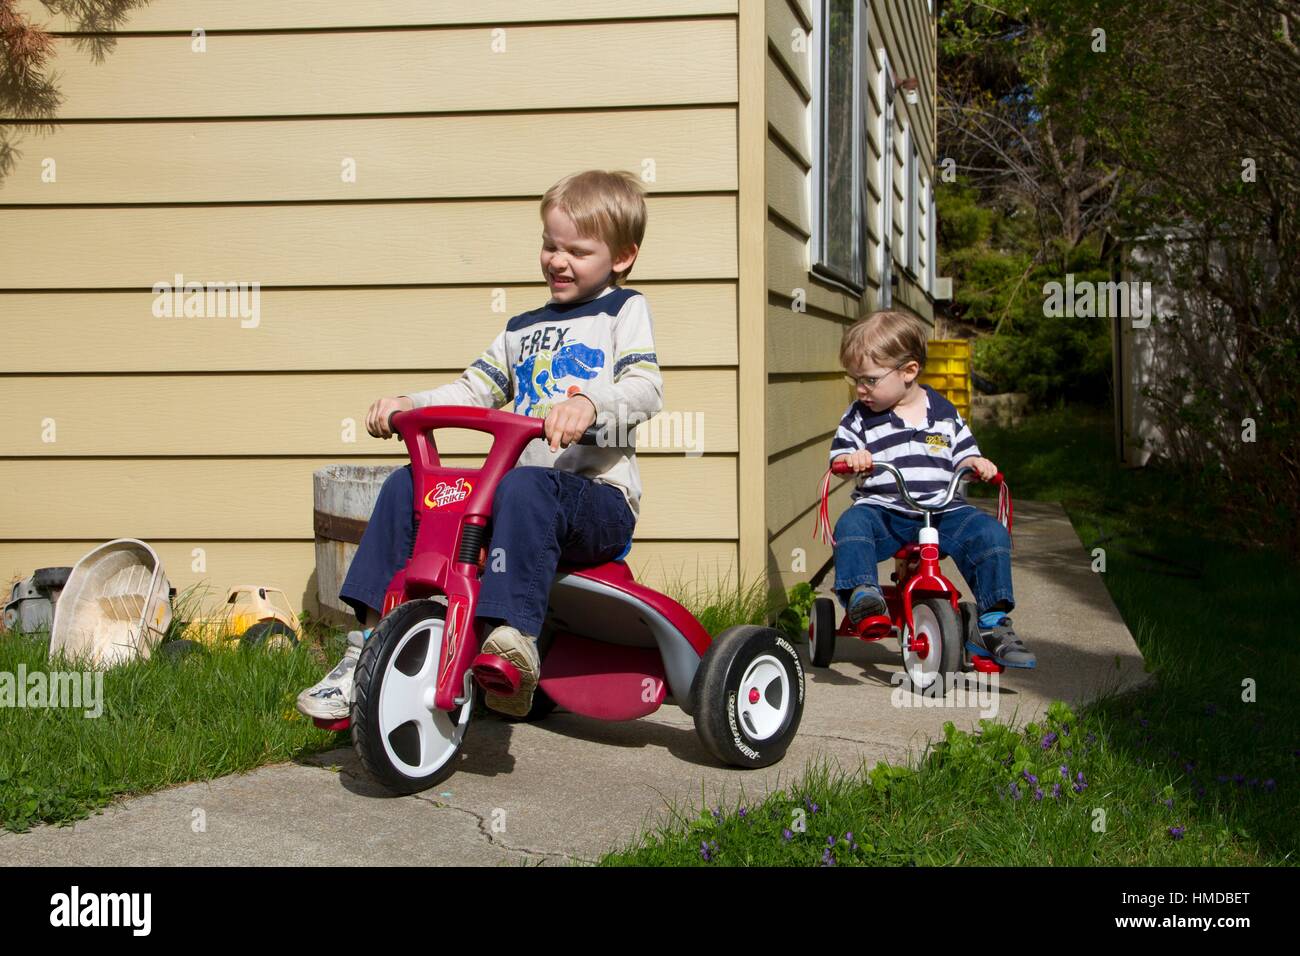 Two boys ride trikes outdoors. Stock Photo